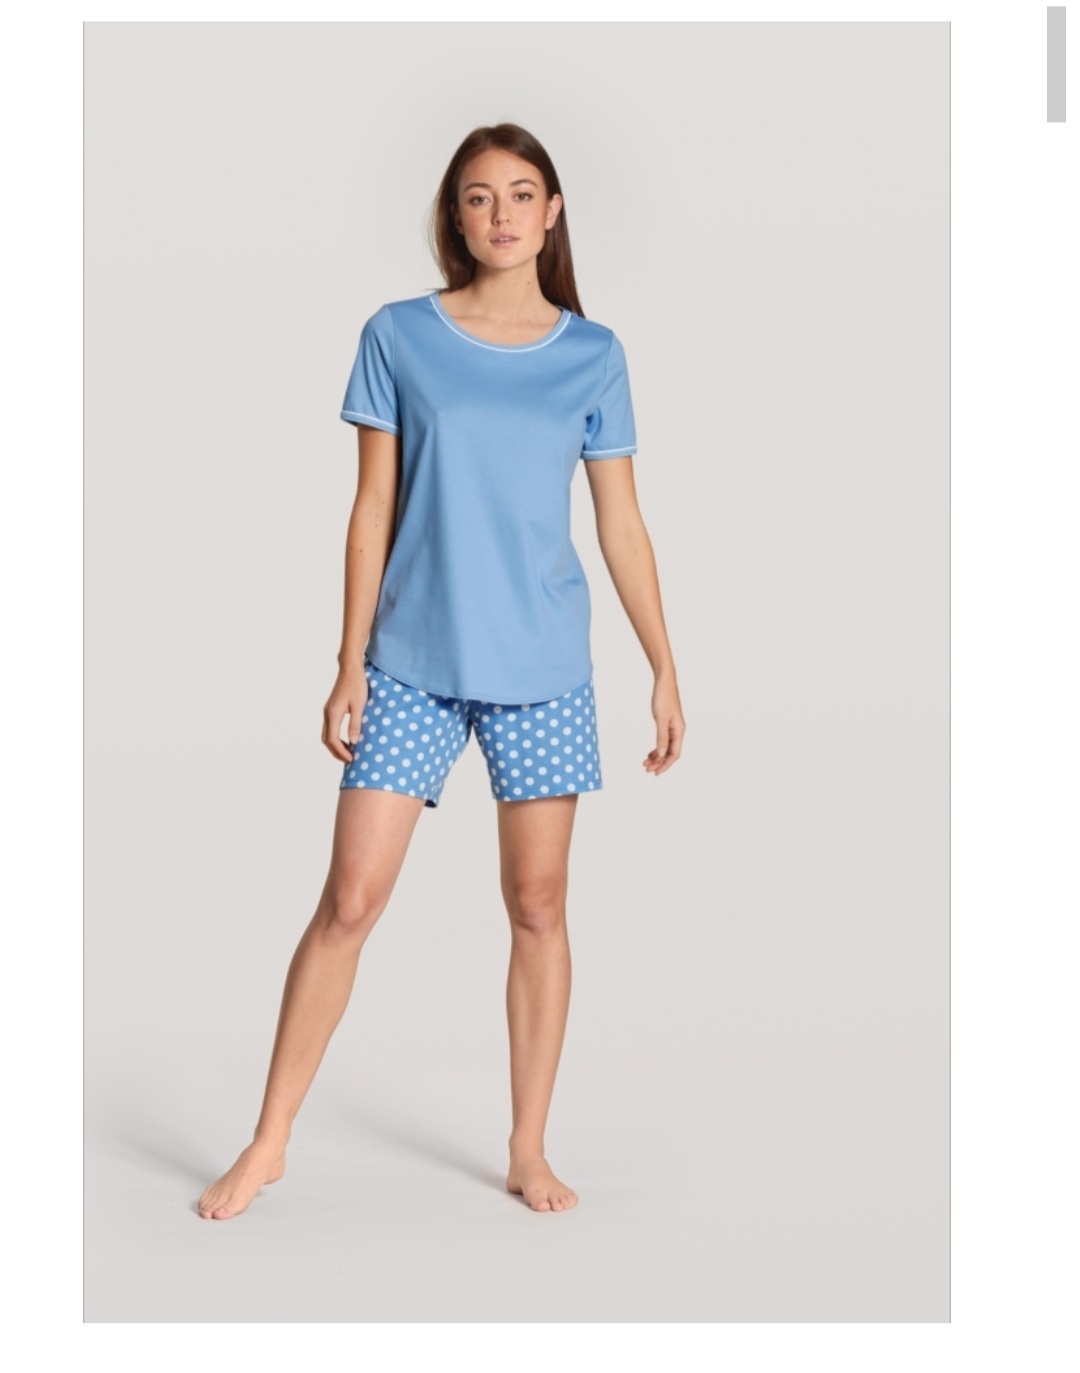 Calida Sweet Dreams Victoria shorts pyjamas